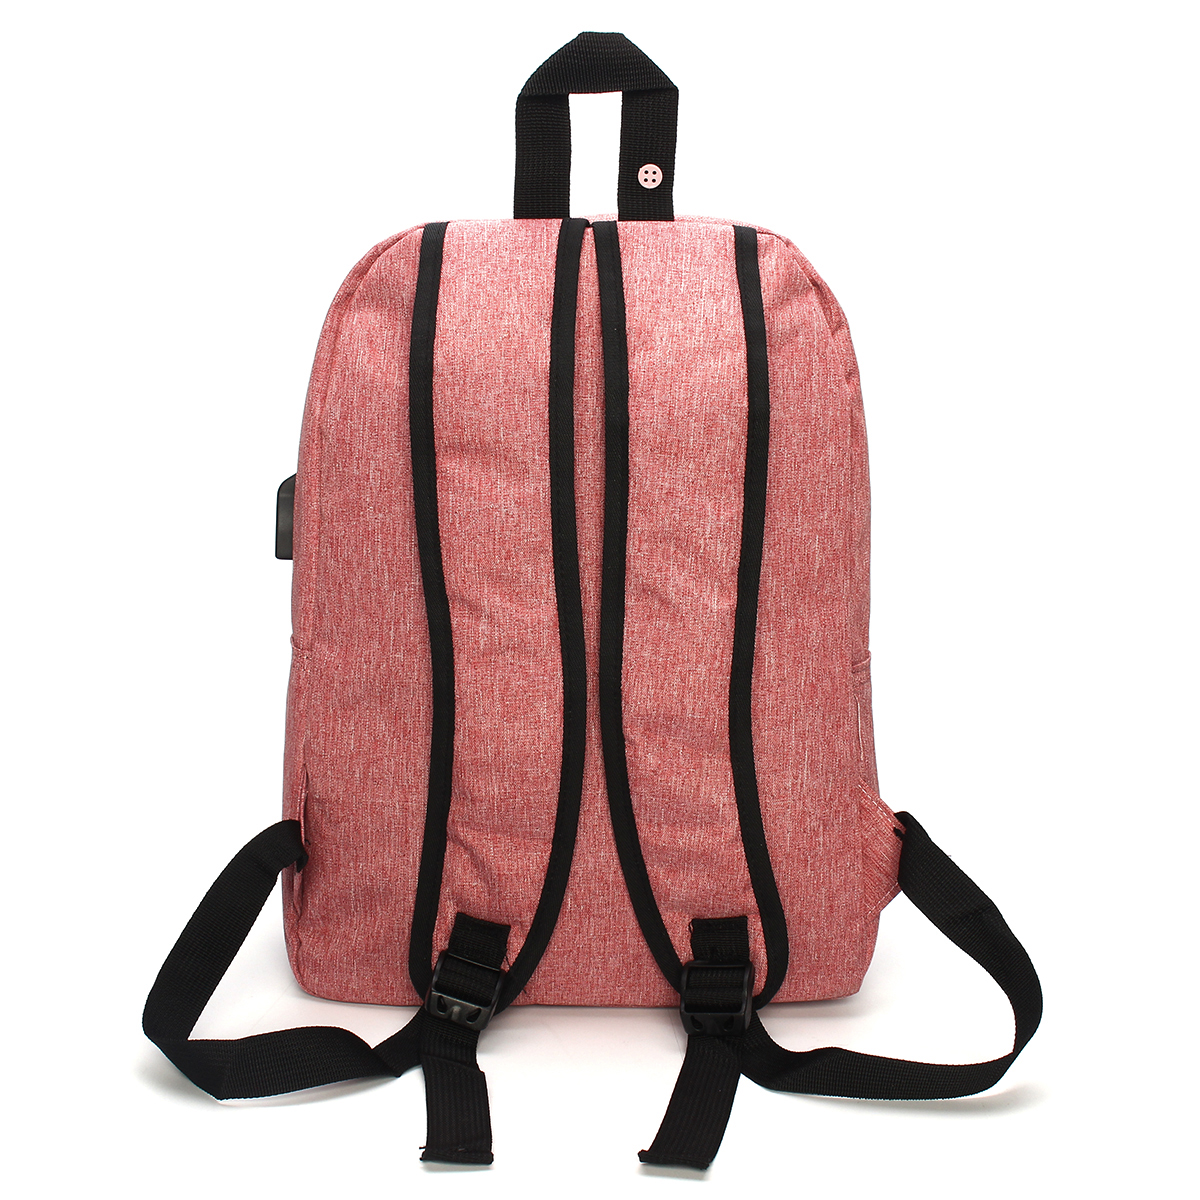 IPReetrade-Men-Women-USB-Charging-Backpack-Laptop-Bag-Travel-School-Book-Rucksack-1165838-4